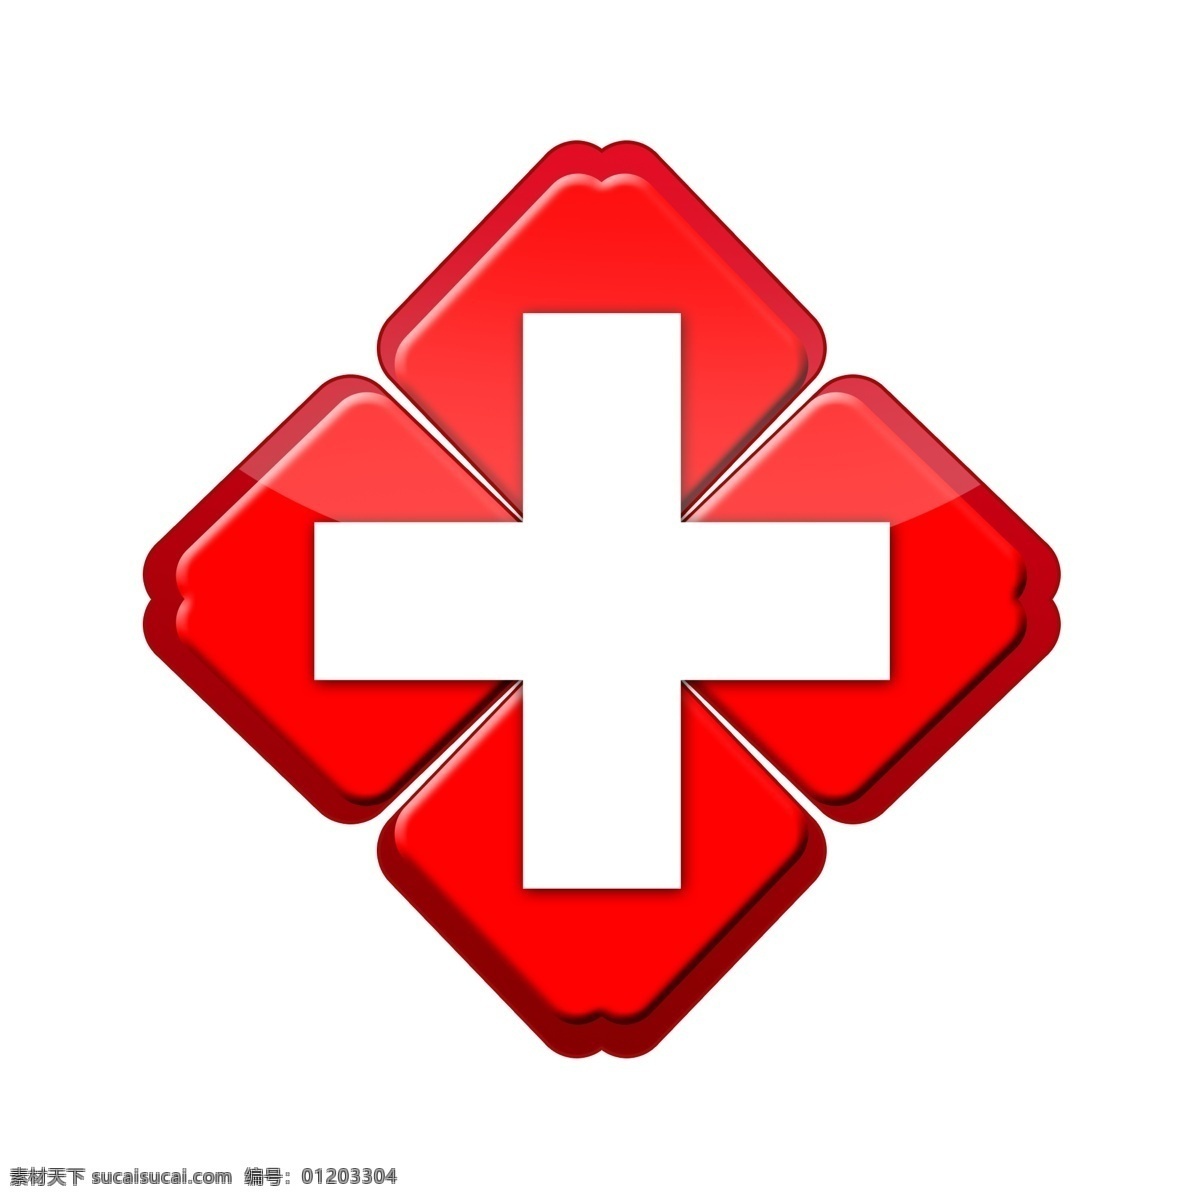 医疗机构 红十字 标志 十字架 医院 医疗 医学徽标